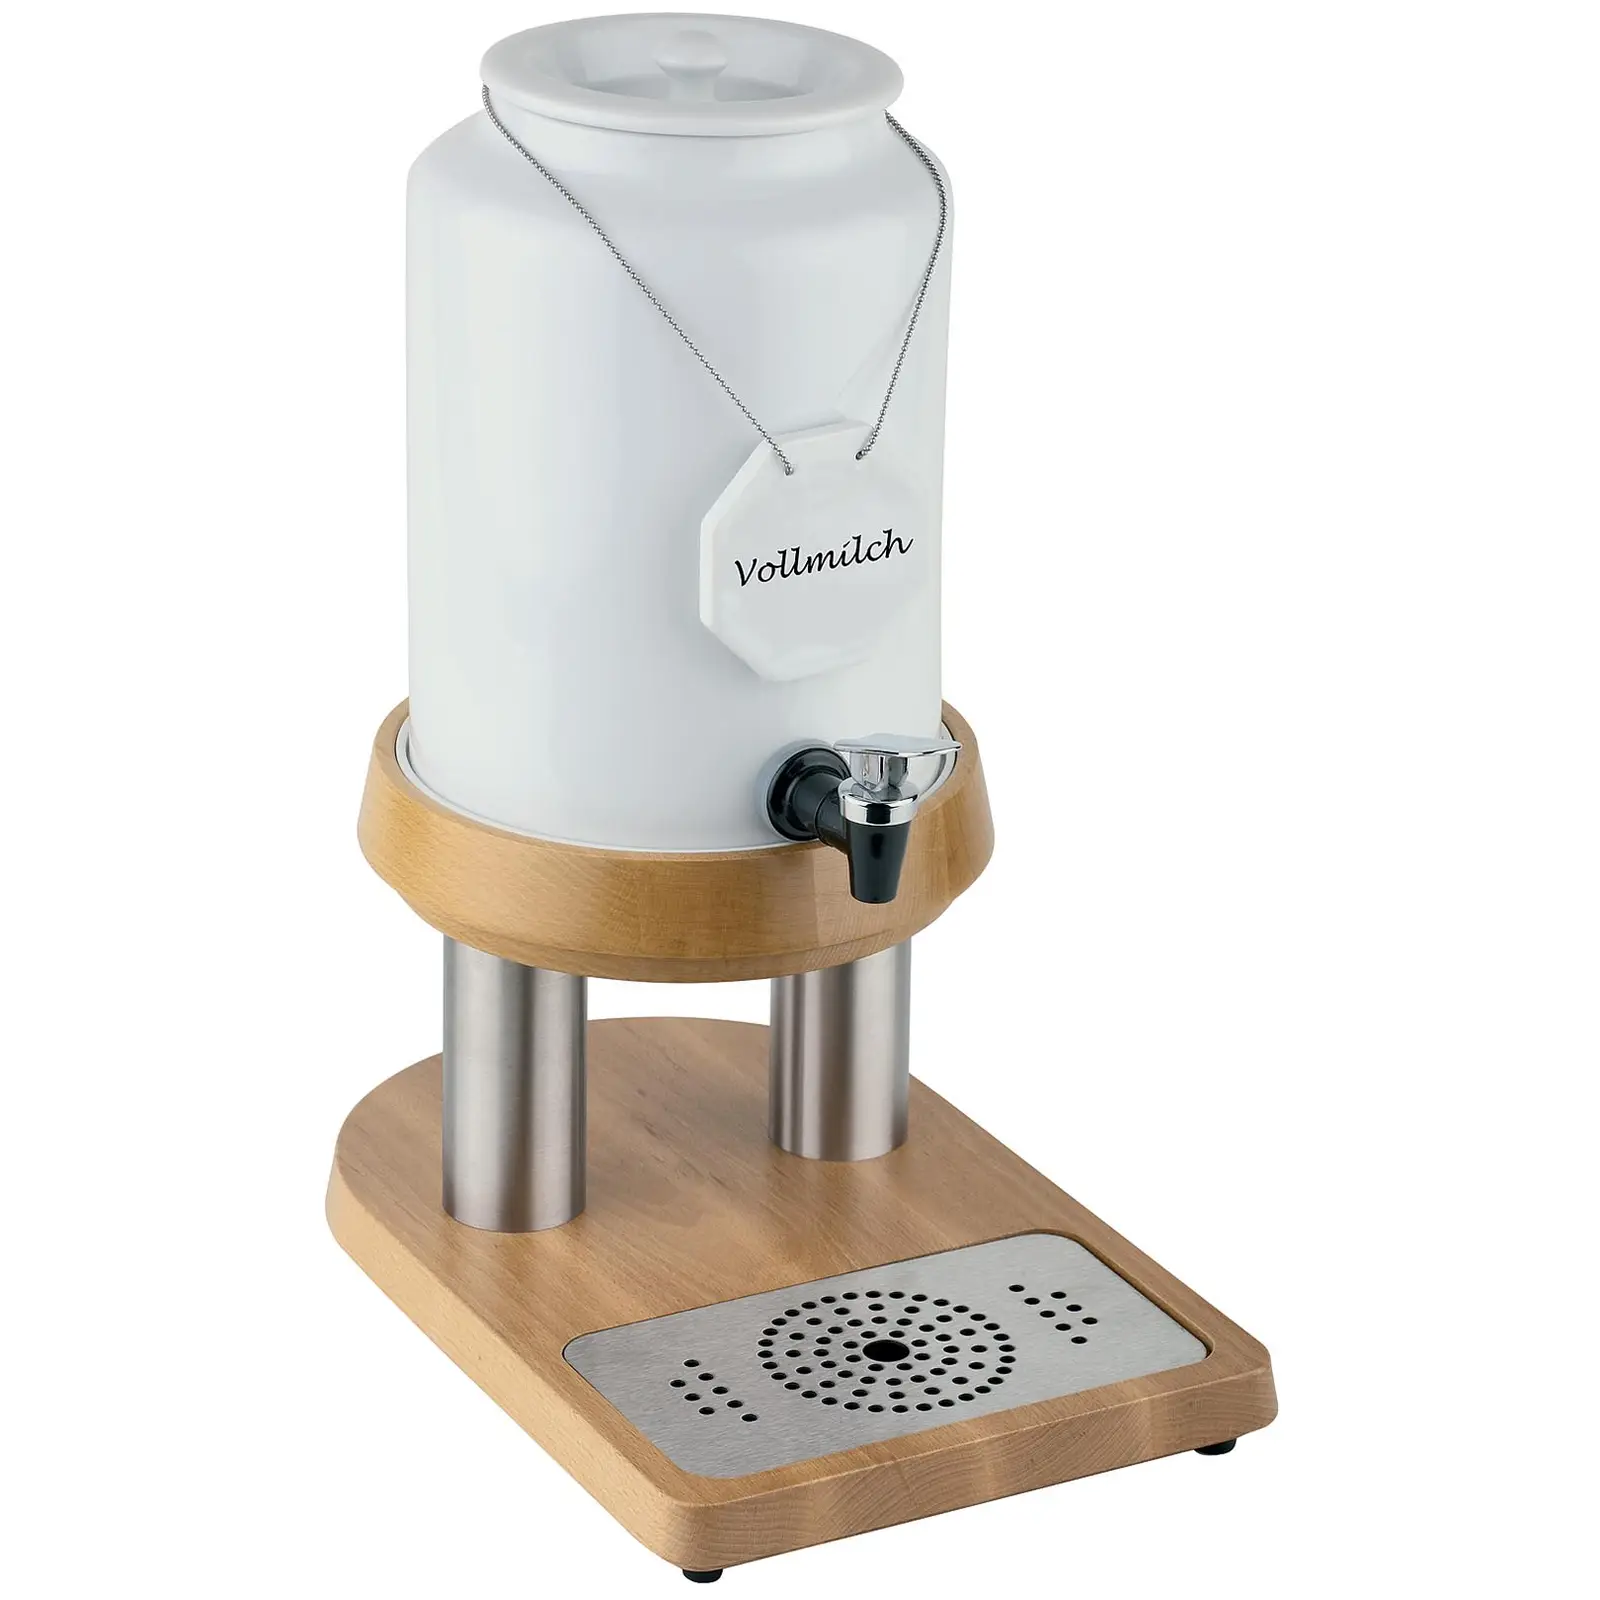 Milk Dispenser - Stainless steel, wood, porcelain - 4 L